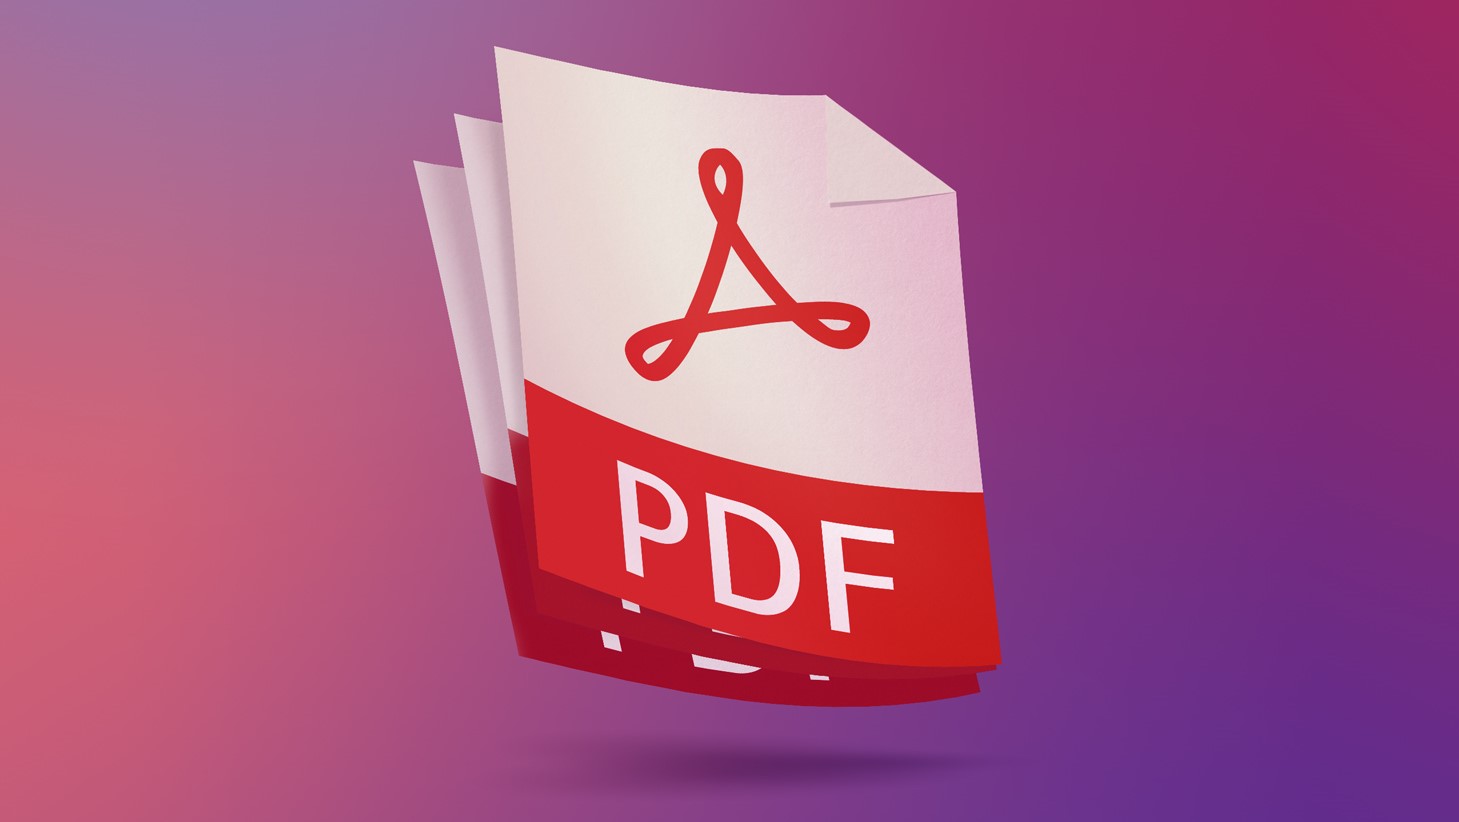 Wyciek danych z witryn do konwersji plików PDF: tysiące dokumentów użytkowników udostępnionych publicznie